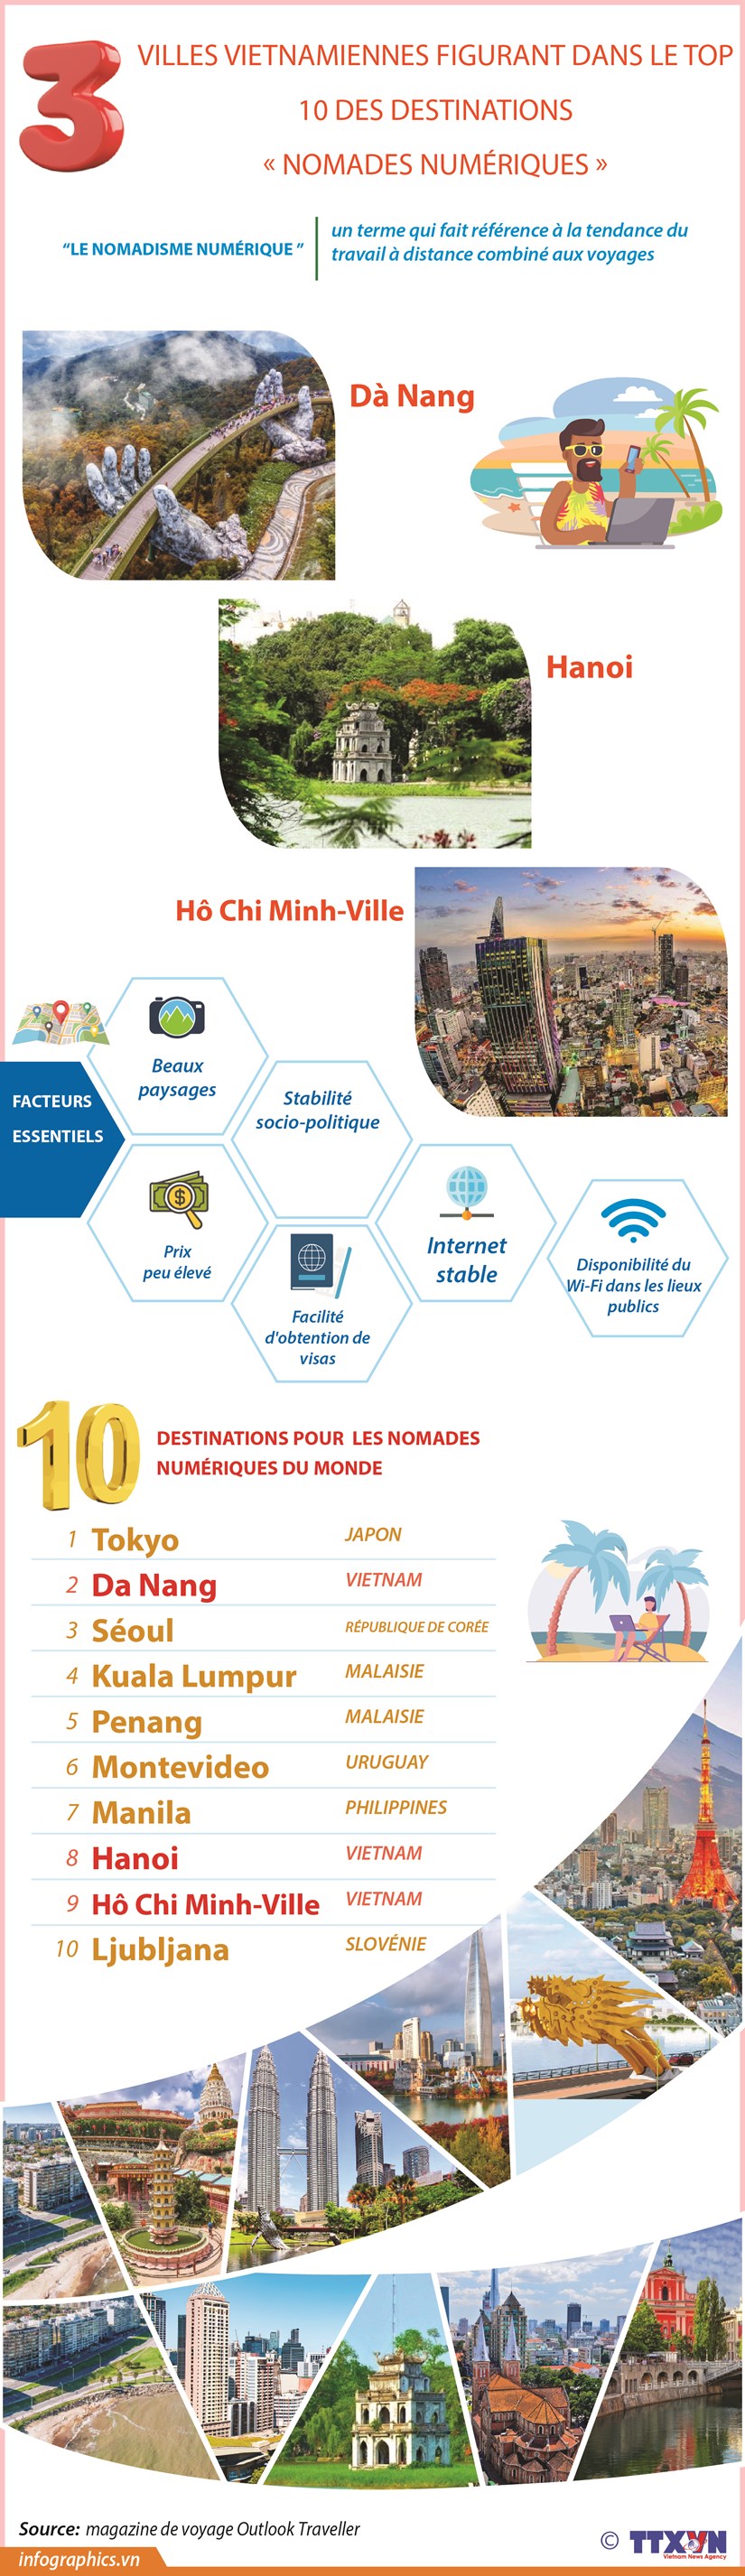 Trois villes vietnamiennes figurant dans le top 10 des destinations « nomades numeriques » hinh anh 1